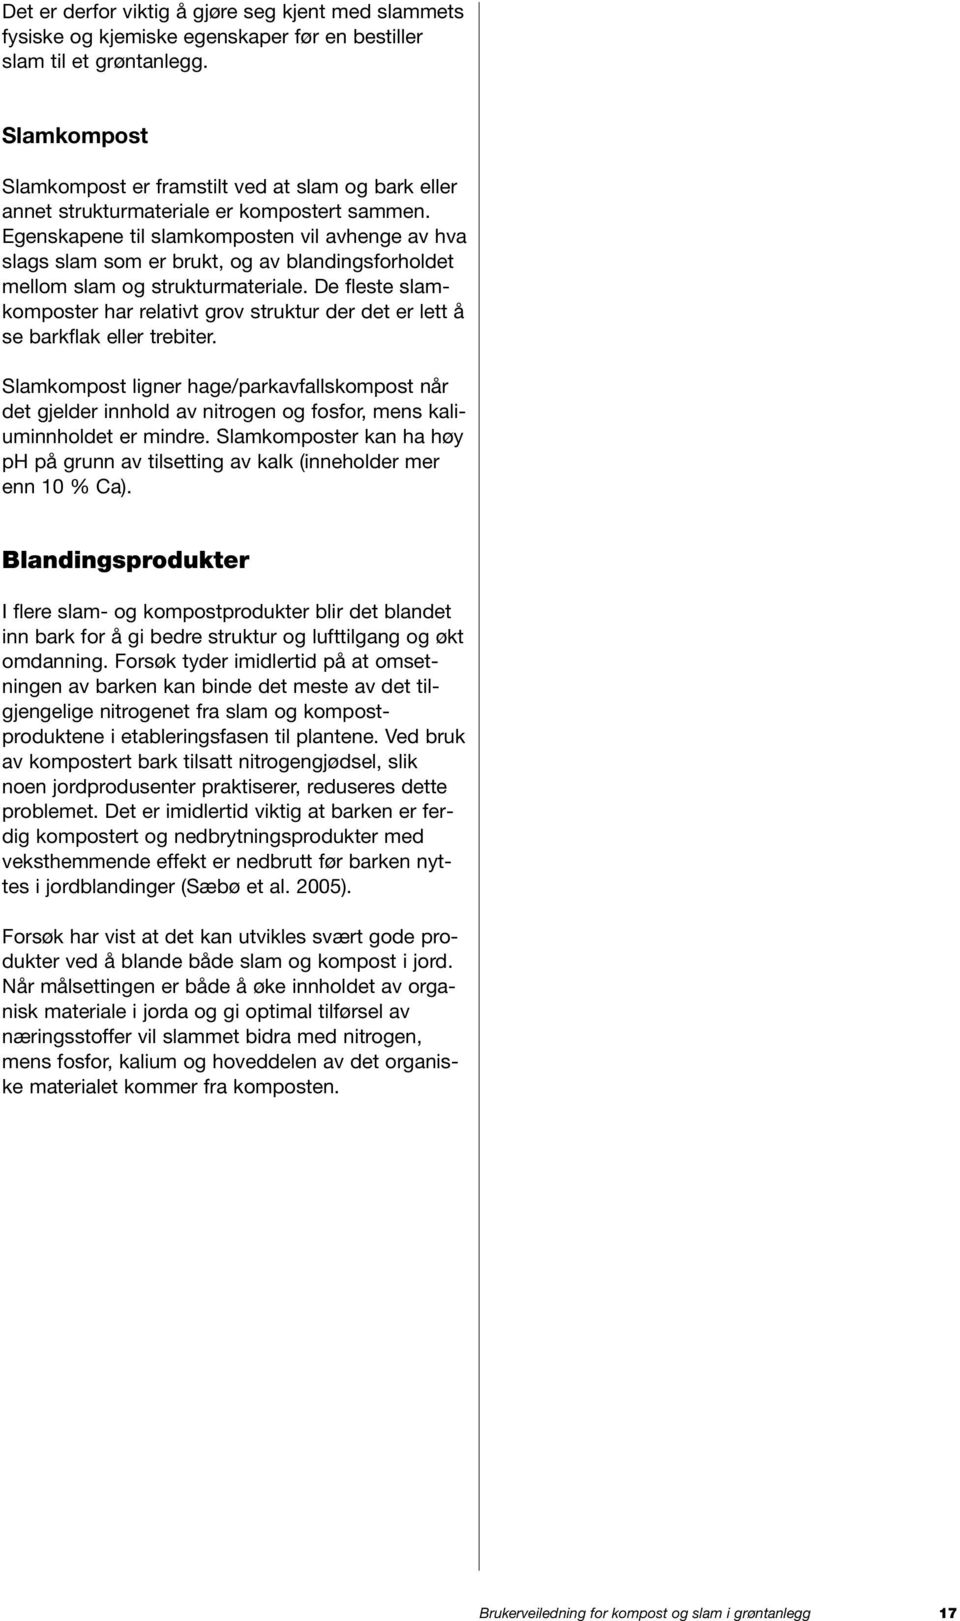 BRUKERVEILEDNING FOR KOMPOST OG SLAM I GRØNTANLEGG - PDF Gratis nedlasting